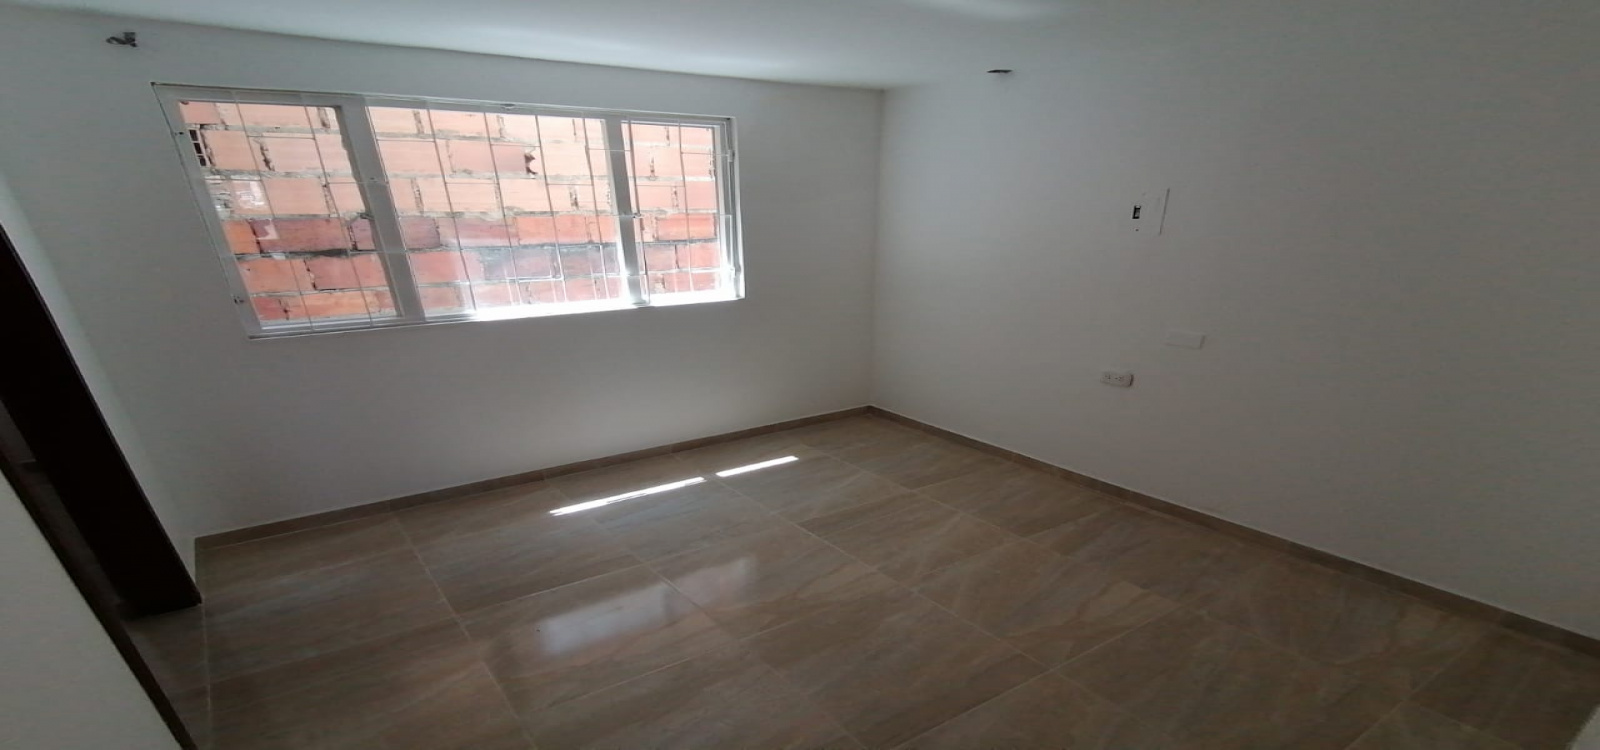 38B- 29 SUR 2, Bogotá, Sur, Guacamayas, 3 Habitaciones Habitaciones,2 BathroomsBathrooms,Apartamentos,Arriendo,2,3120